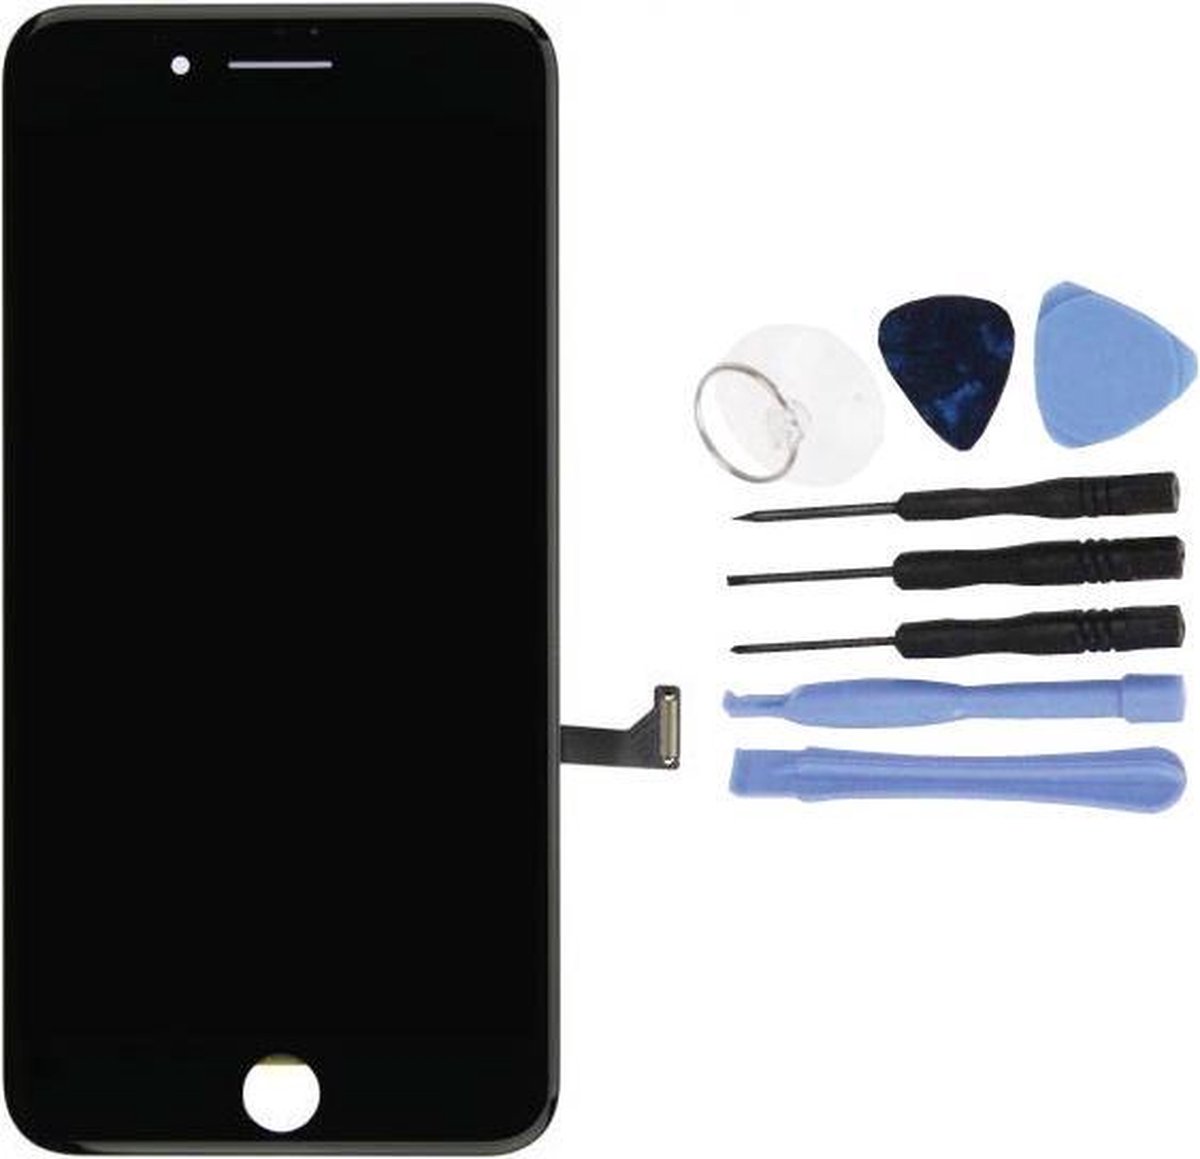 Voor Apple iPhone 7 Plus - Volledig Scherm (Touchscreen + LCD) - AA+ Kwaliteit - Zwart & Tools